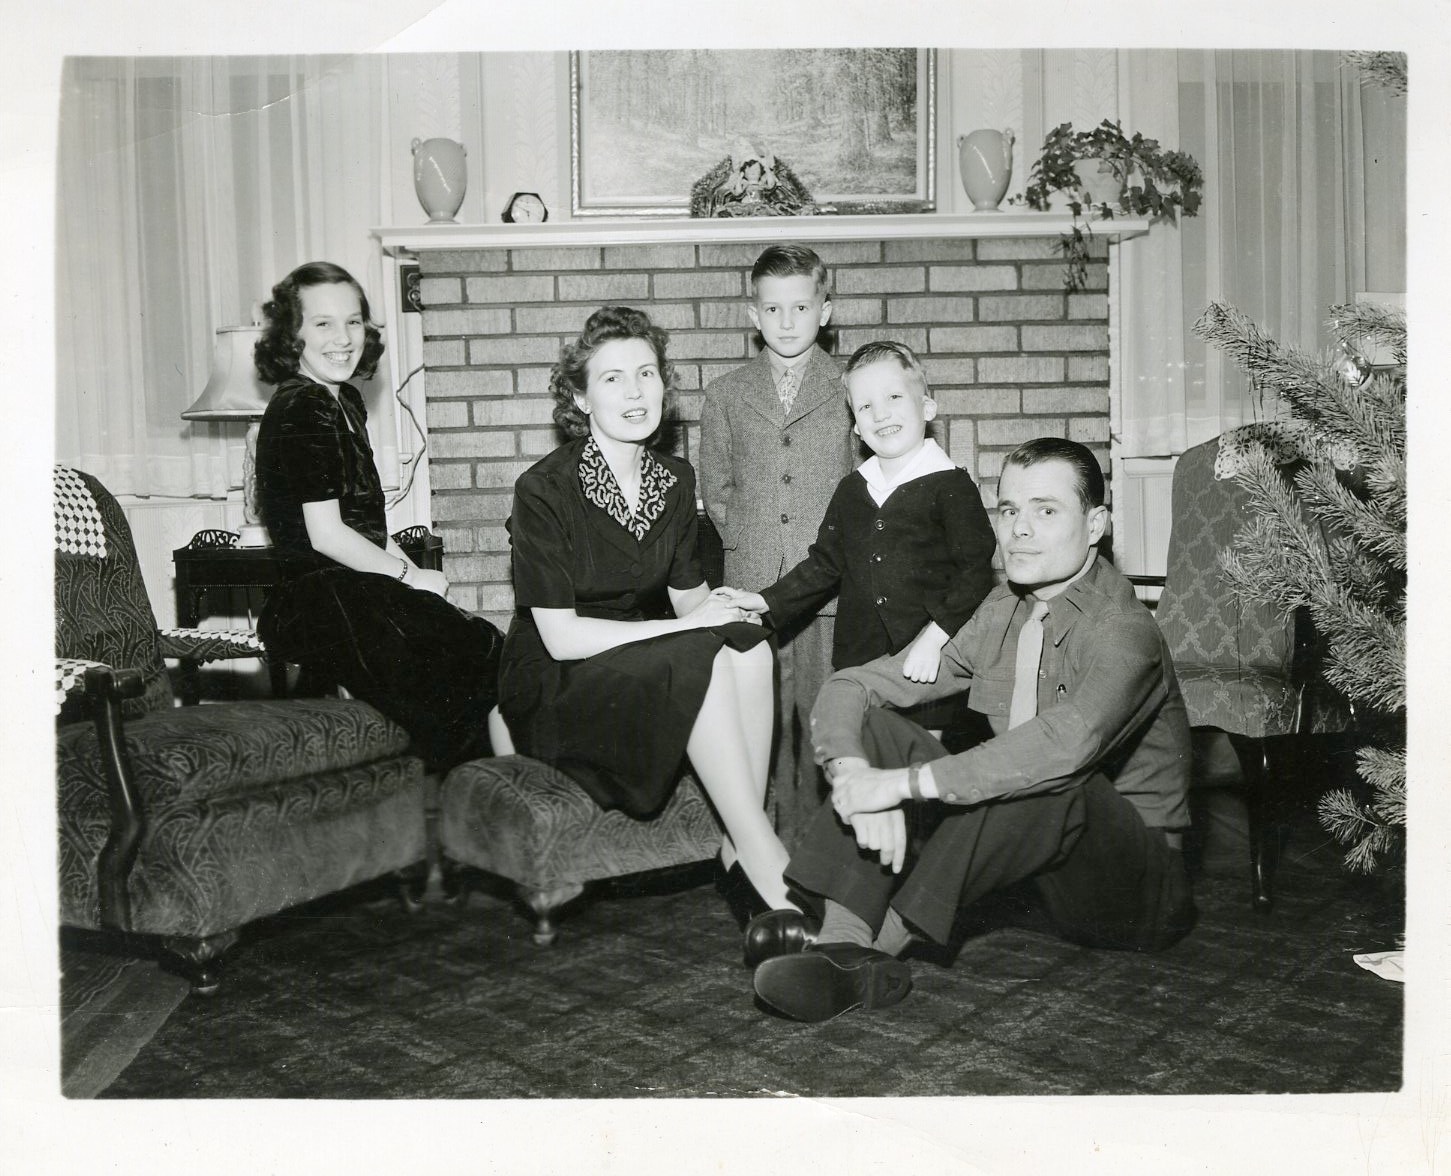 Ralph and family on Christmas